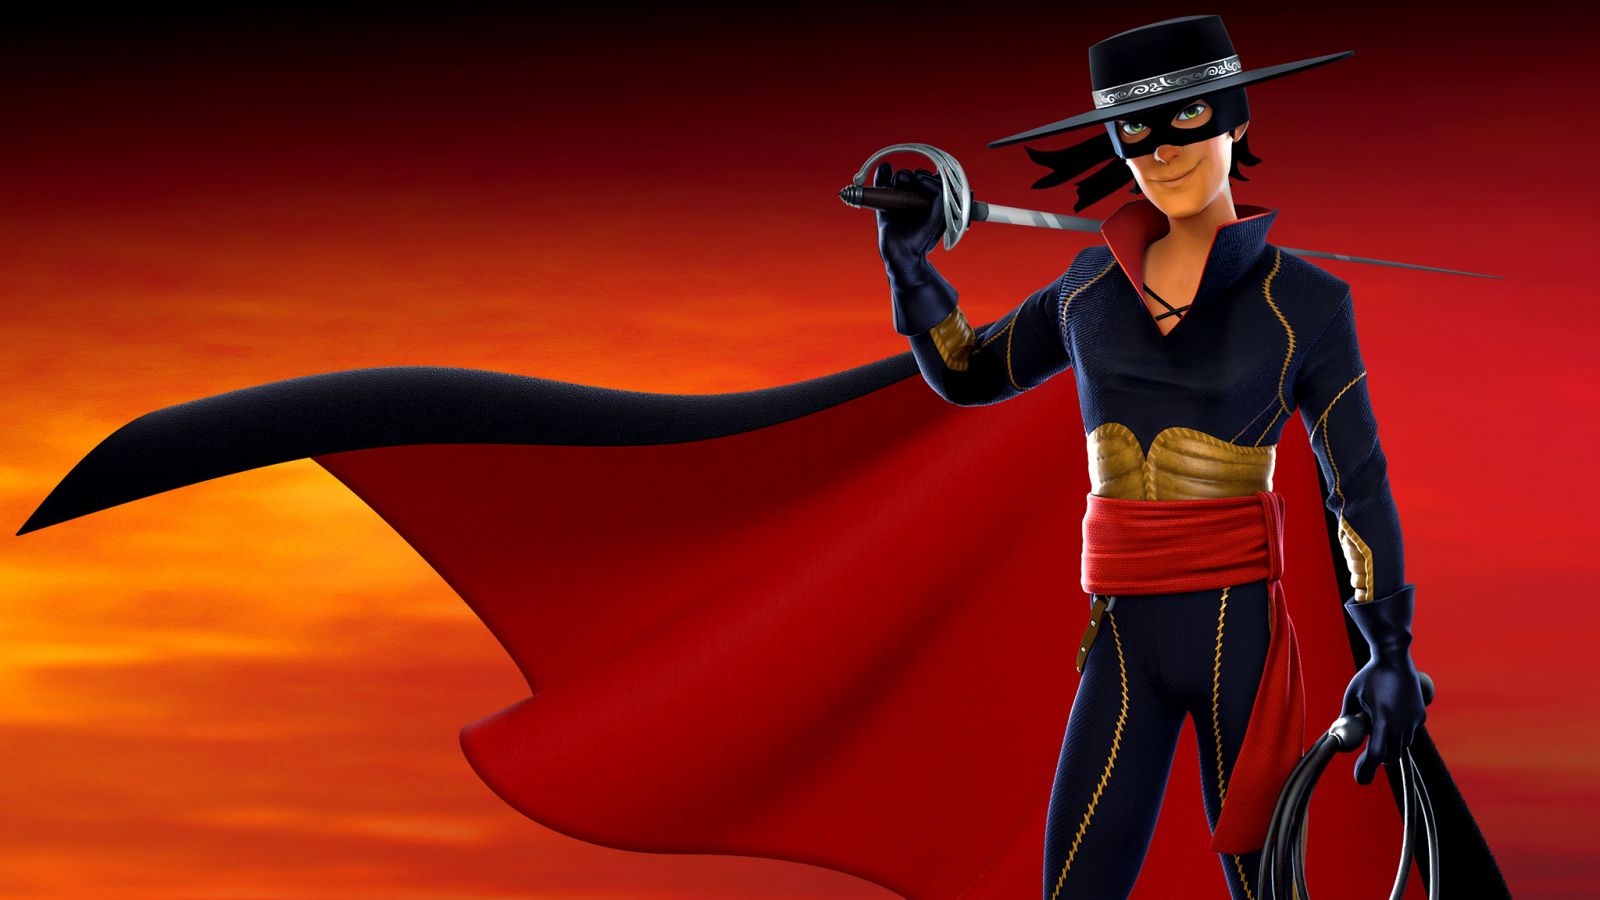 El Zorro luchará por la justicia en Clan